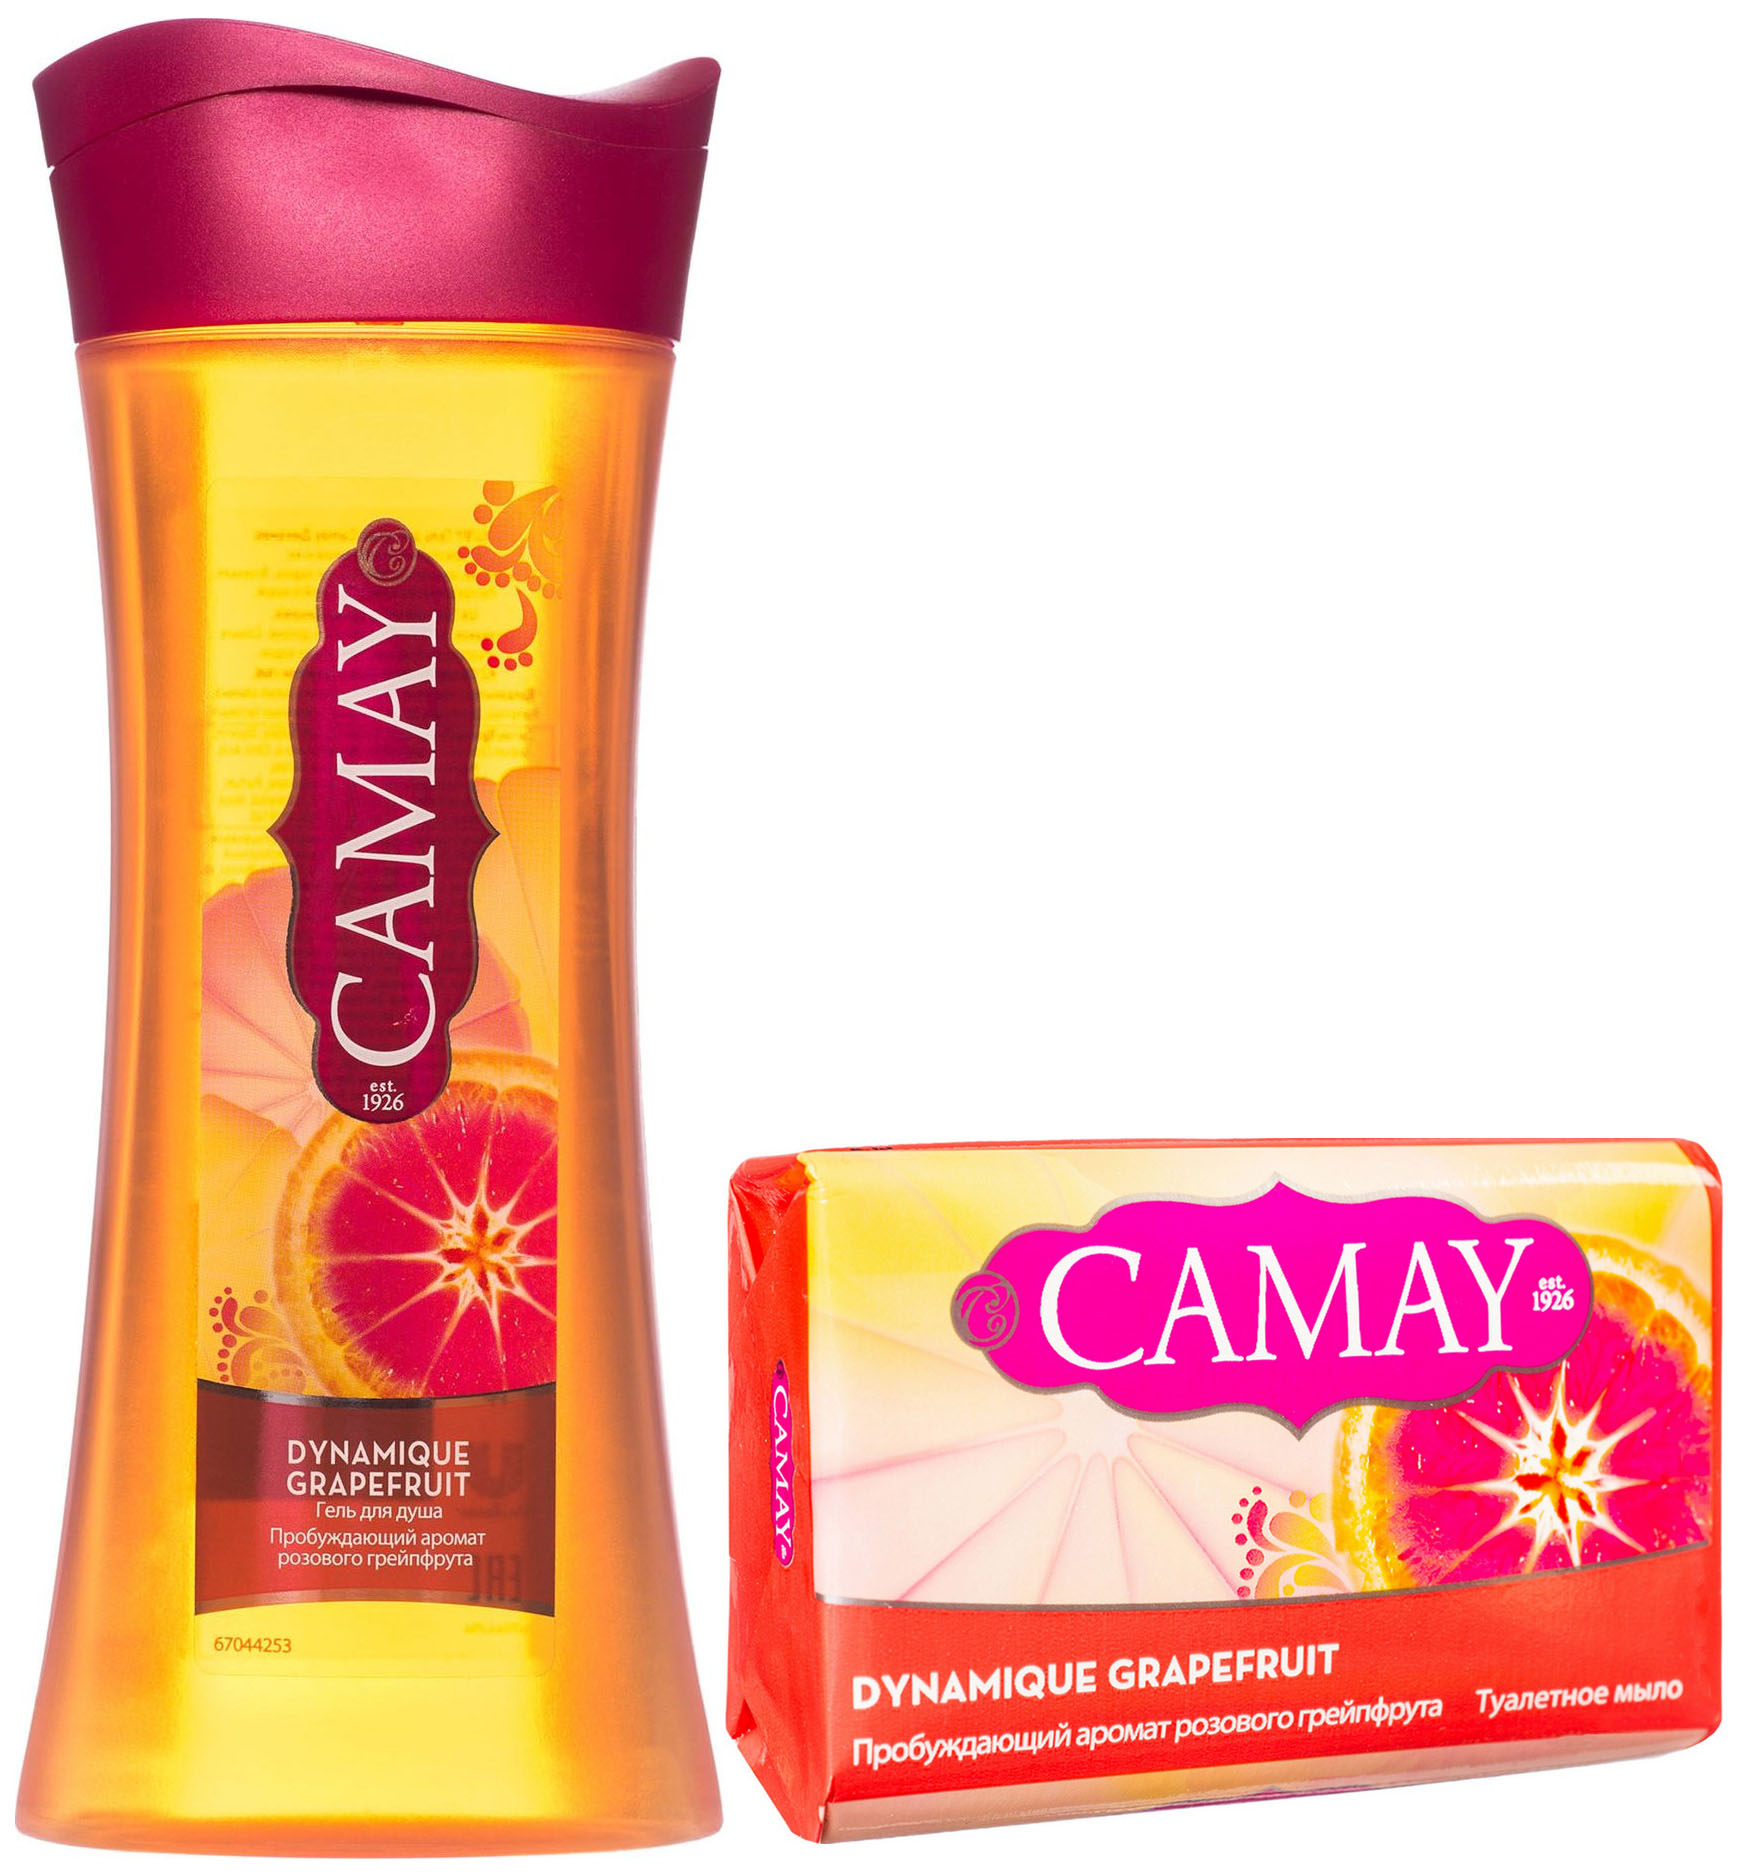 Гель для душа Camay Dynamique Grapefruit 250 мл + Мыло Camay Dynamique Grapefruit 85 г